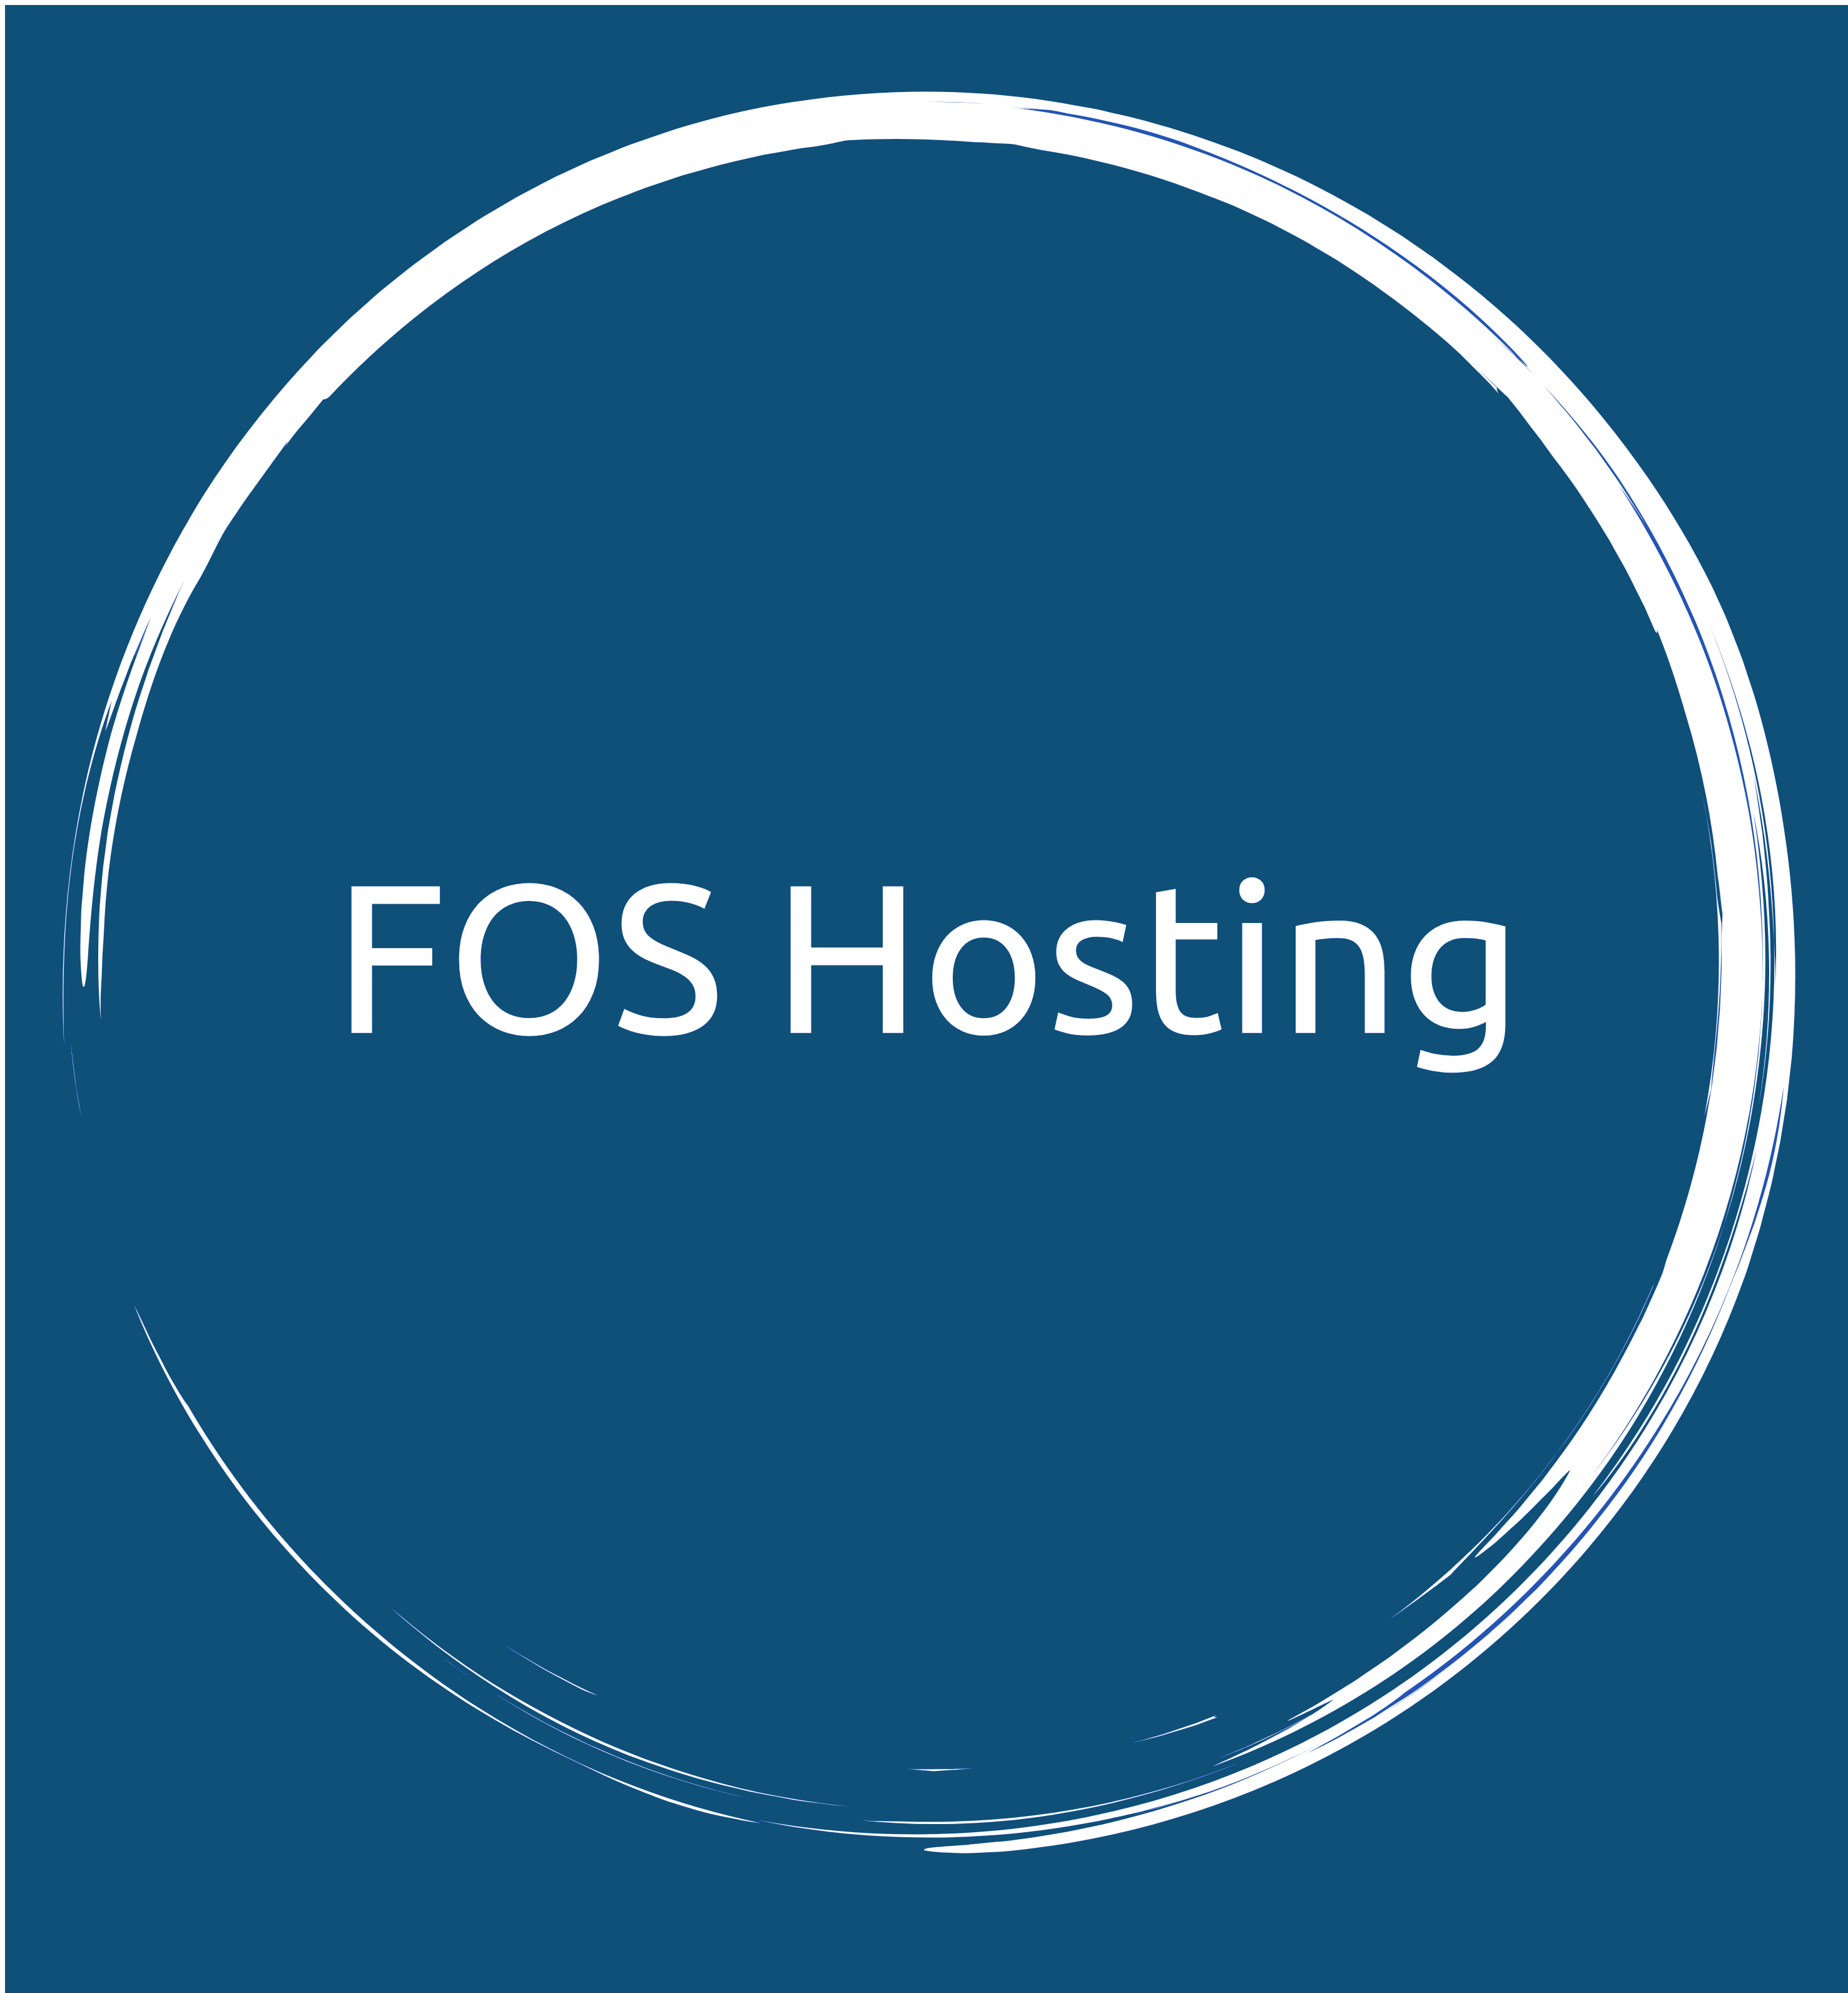 FOS Hosting